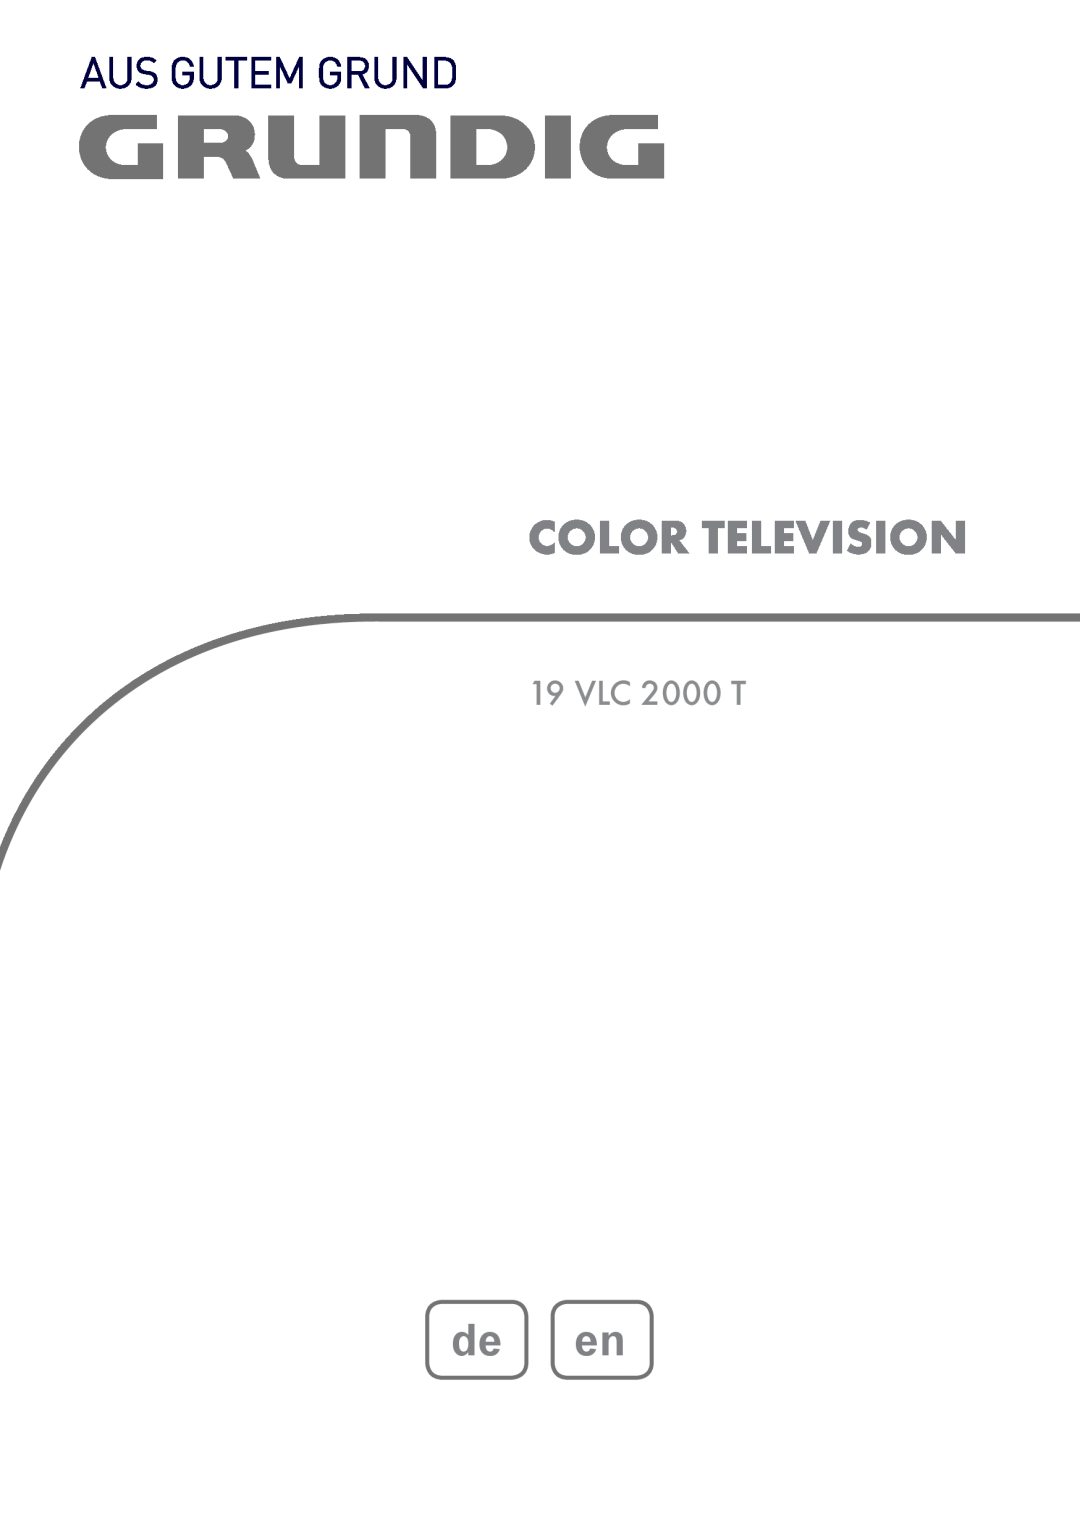 Grundig 19 VLC 2000 T manual Color Television, de en 